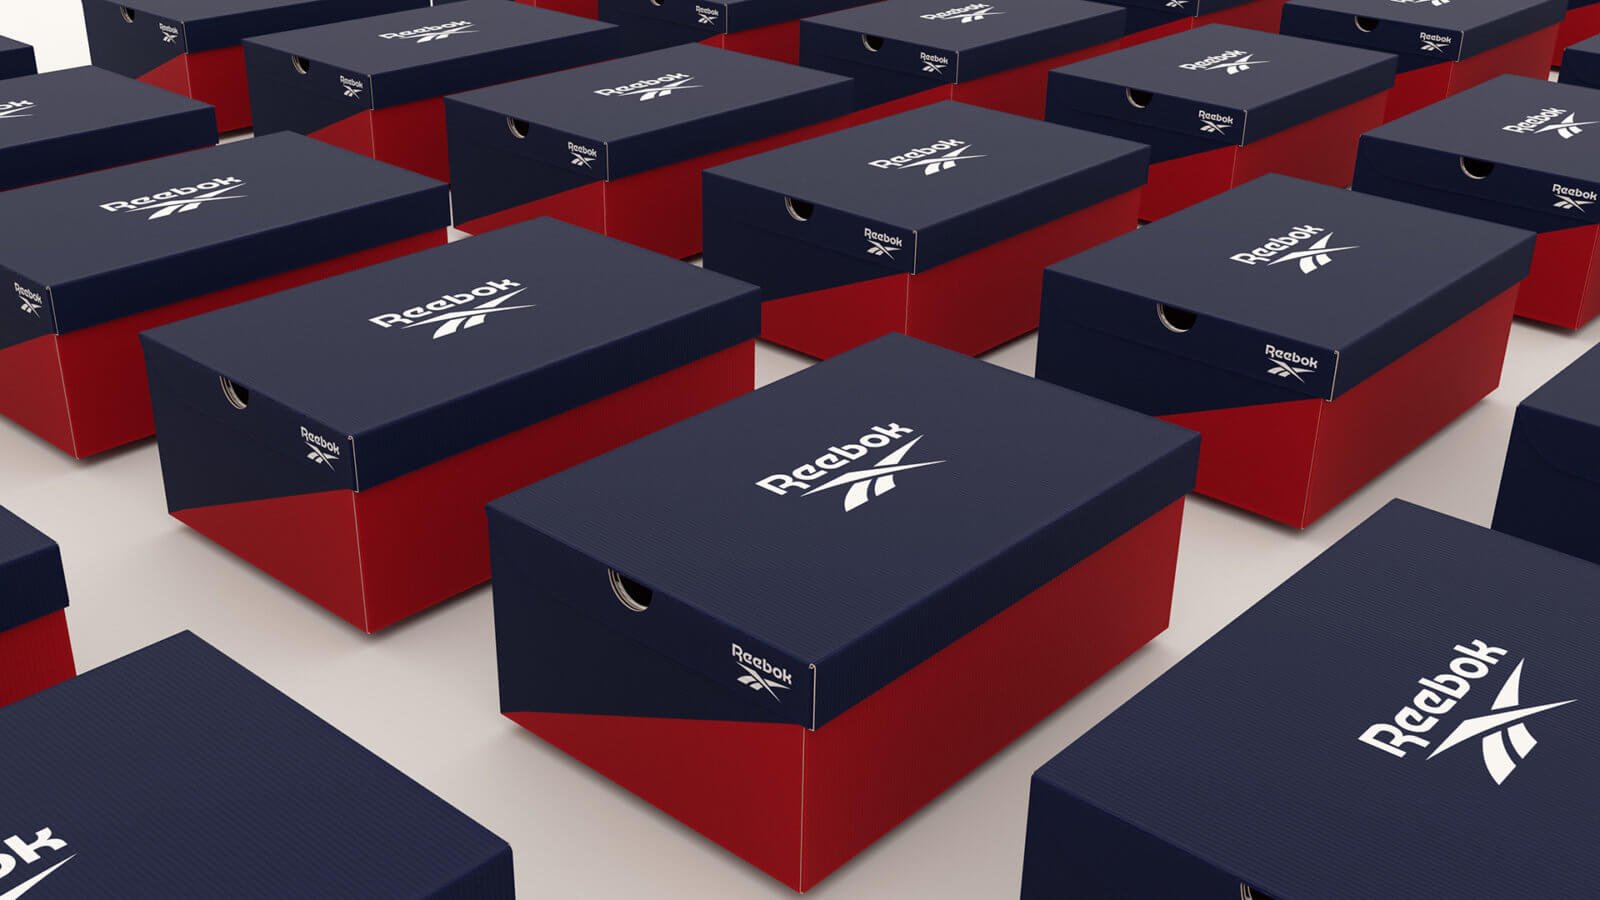 reebok 2019 shoeboxes